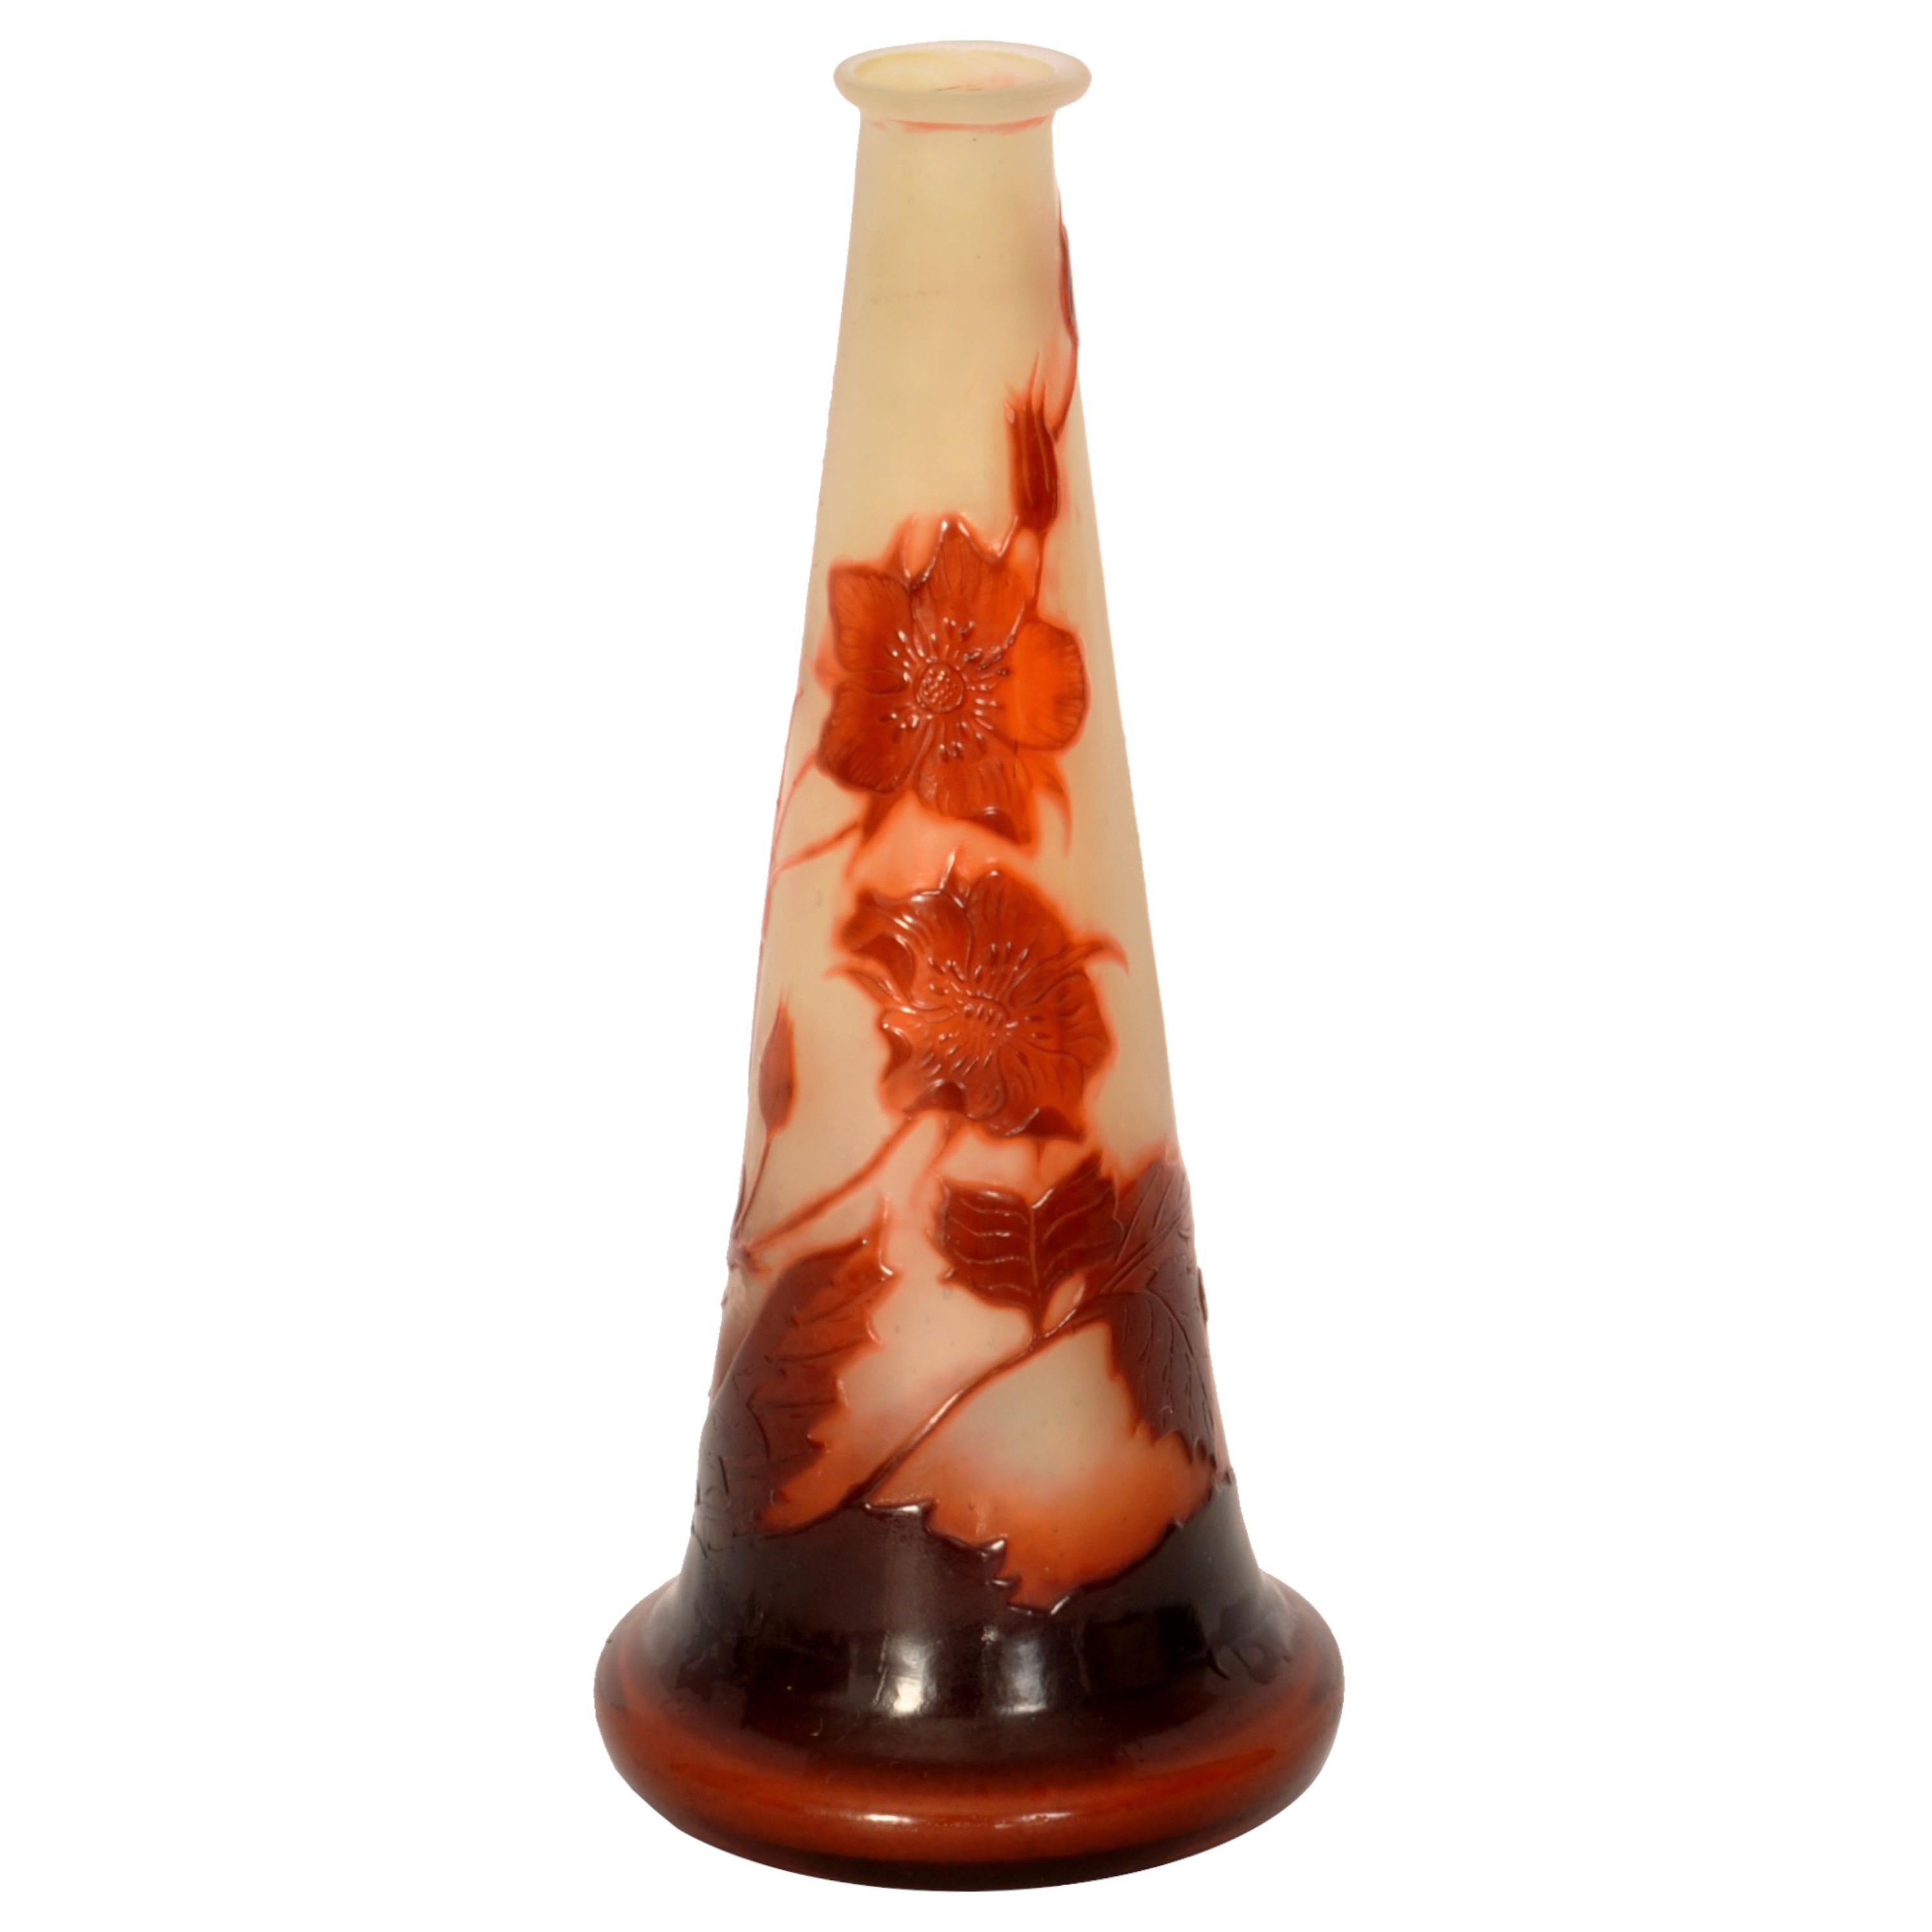 Un beau vase ancien en verre camée Diptych Fine Arts, circa 1900.
Le vase à tige de forme conique effilée est finement sculpté à la roue, gravé à l'acide et poli au feu. Le décor en camée de fuchias de couleur bordeaux avec des feuillages en